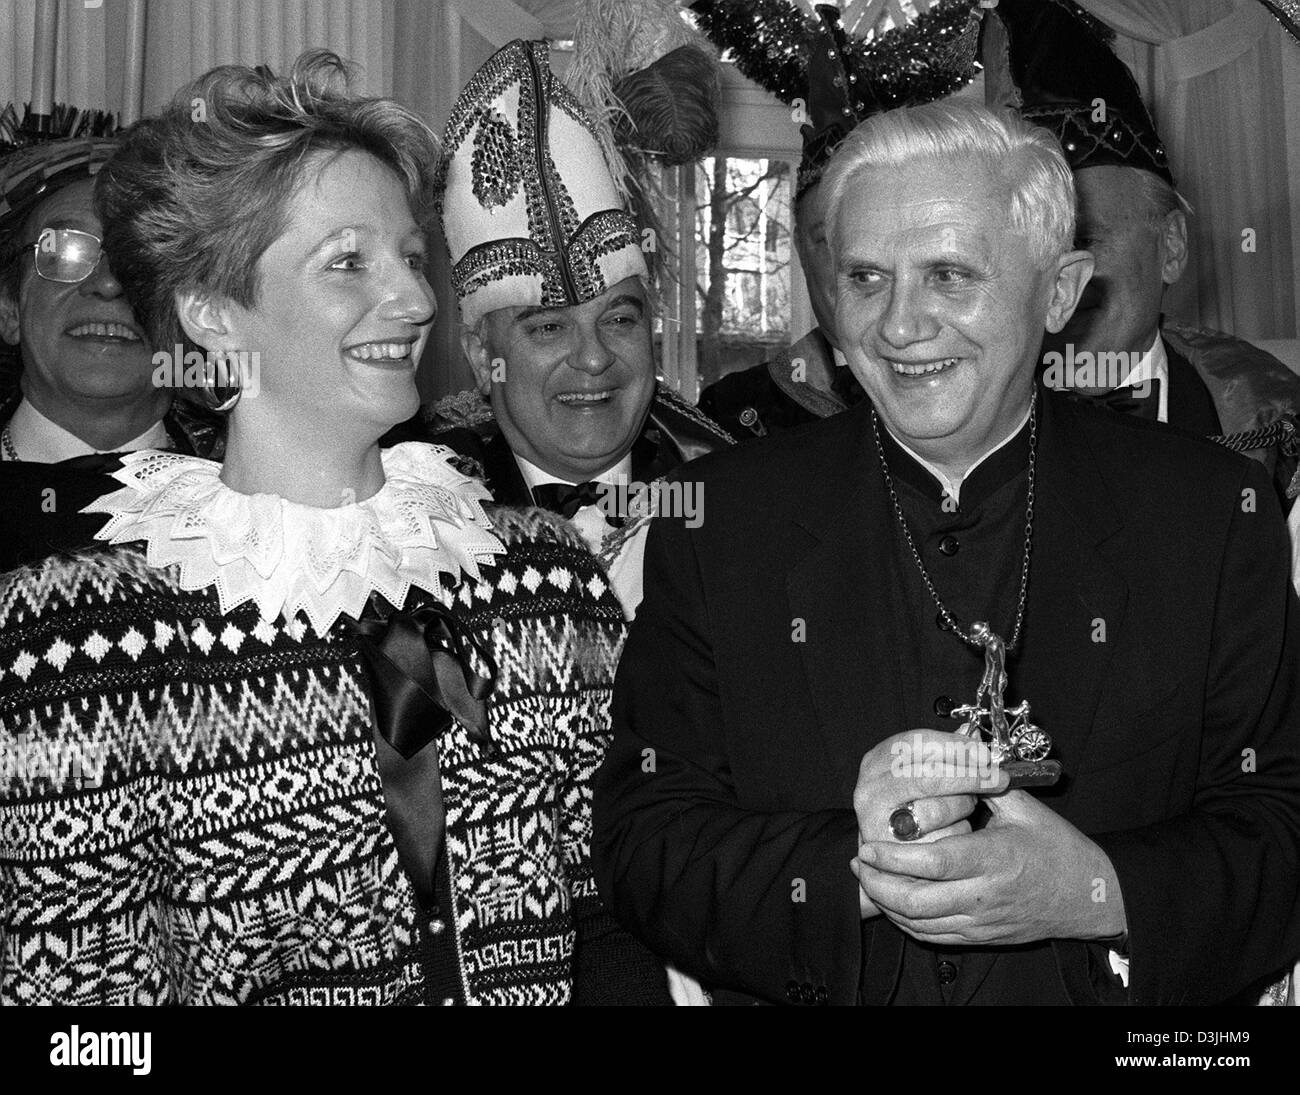 (Afp) - Le Cardinal Joseph Ratzinger (R) sourit durant la cérémonie où il reçoit la soi-disant Valentins médaille de l'Académie Catholique à Munich, Allemagne, 04 janvier 1989. Ratzinger a été décerné pour ses écrits et de ses sermons. Banque D'Images